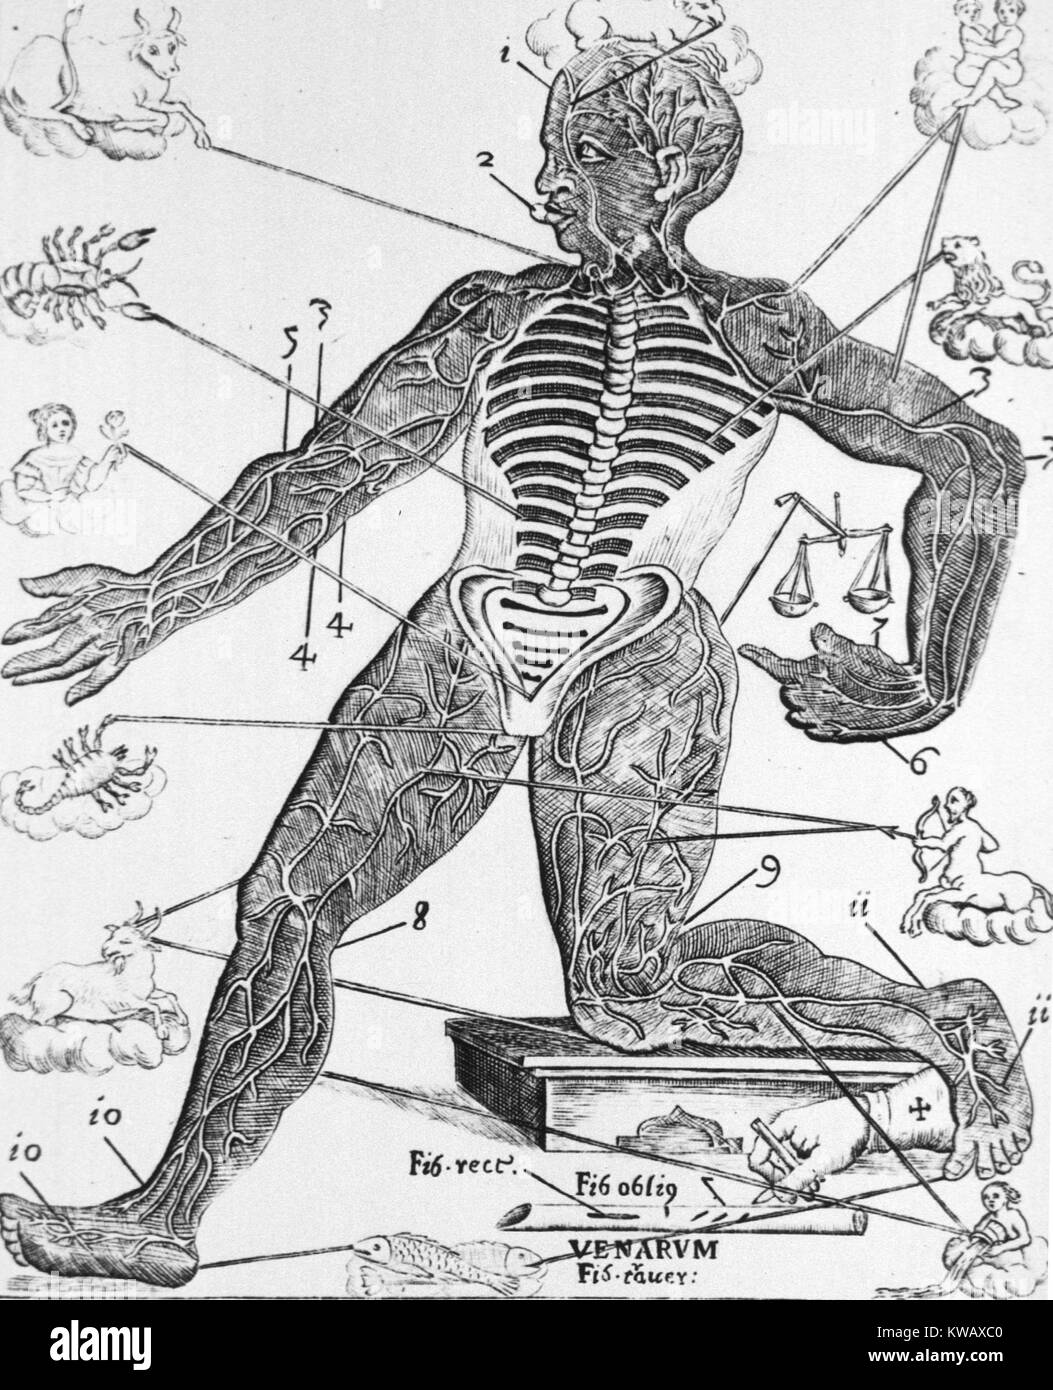 Menschliche Figur mit den Stacheln und die Rippen ausgesetzt sind, zeigen auch die großen Arterien und Venen der Extremitäten des Körpers und kostenlose Sternzeichen, 1690. Stockfoto